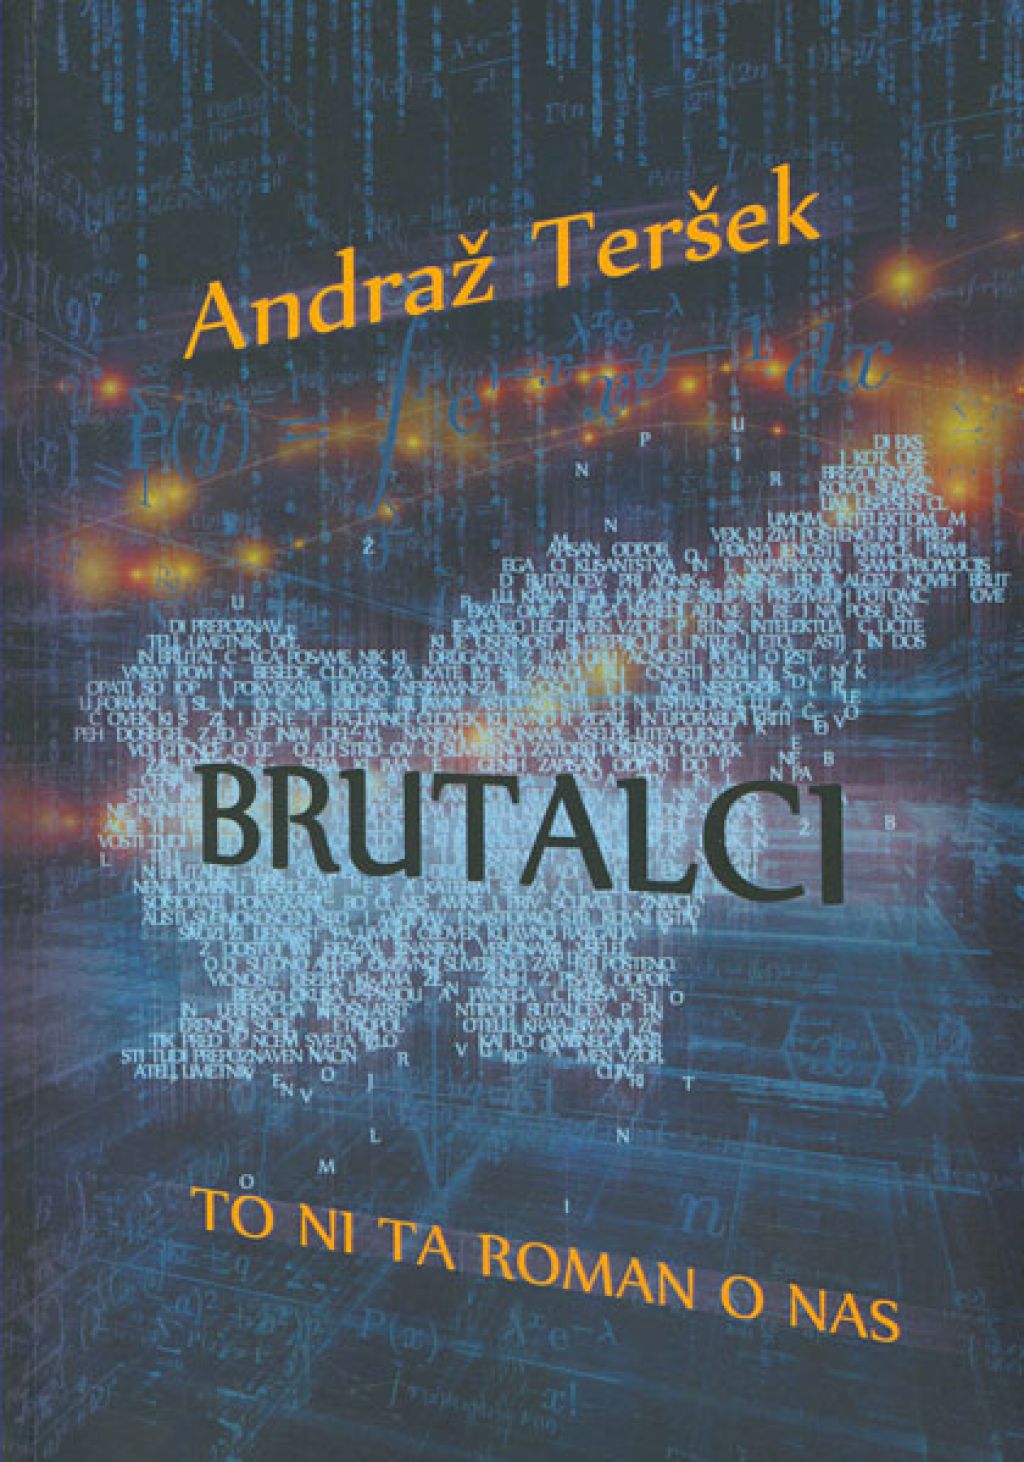 Recenzija knjige: Ali brutalec res lahko obstaja samo še kot romaneskni lik?